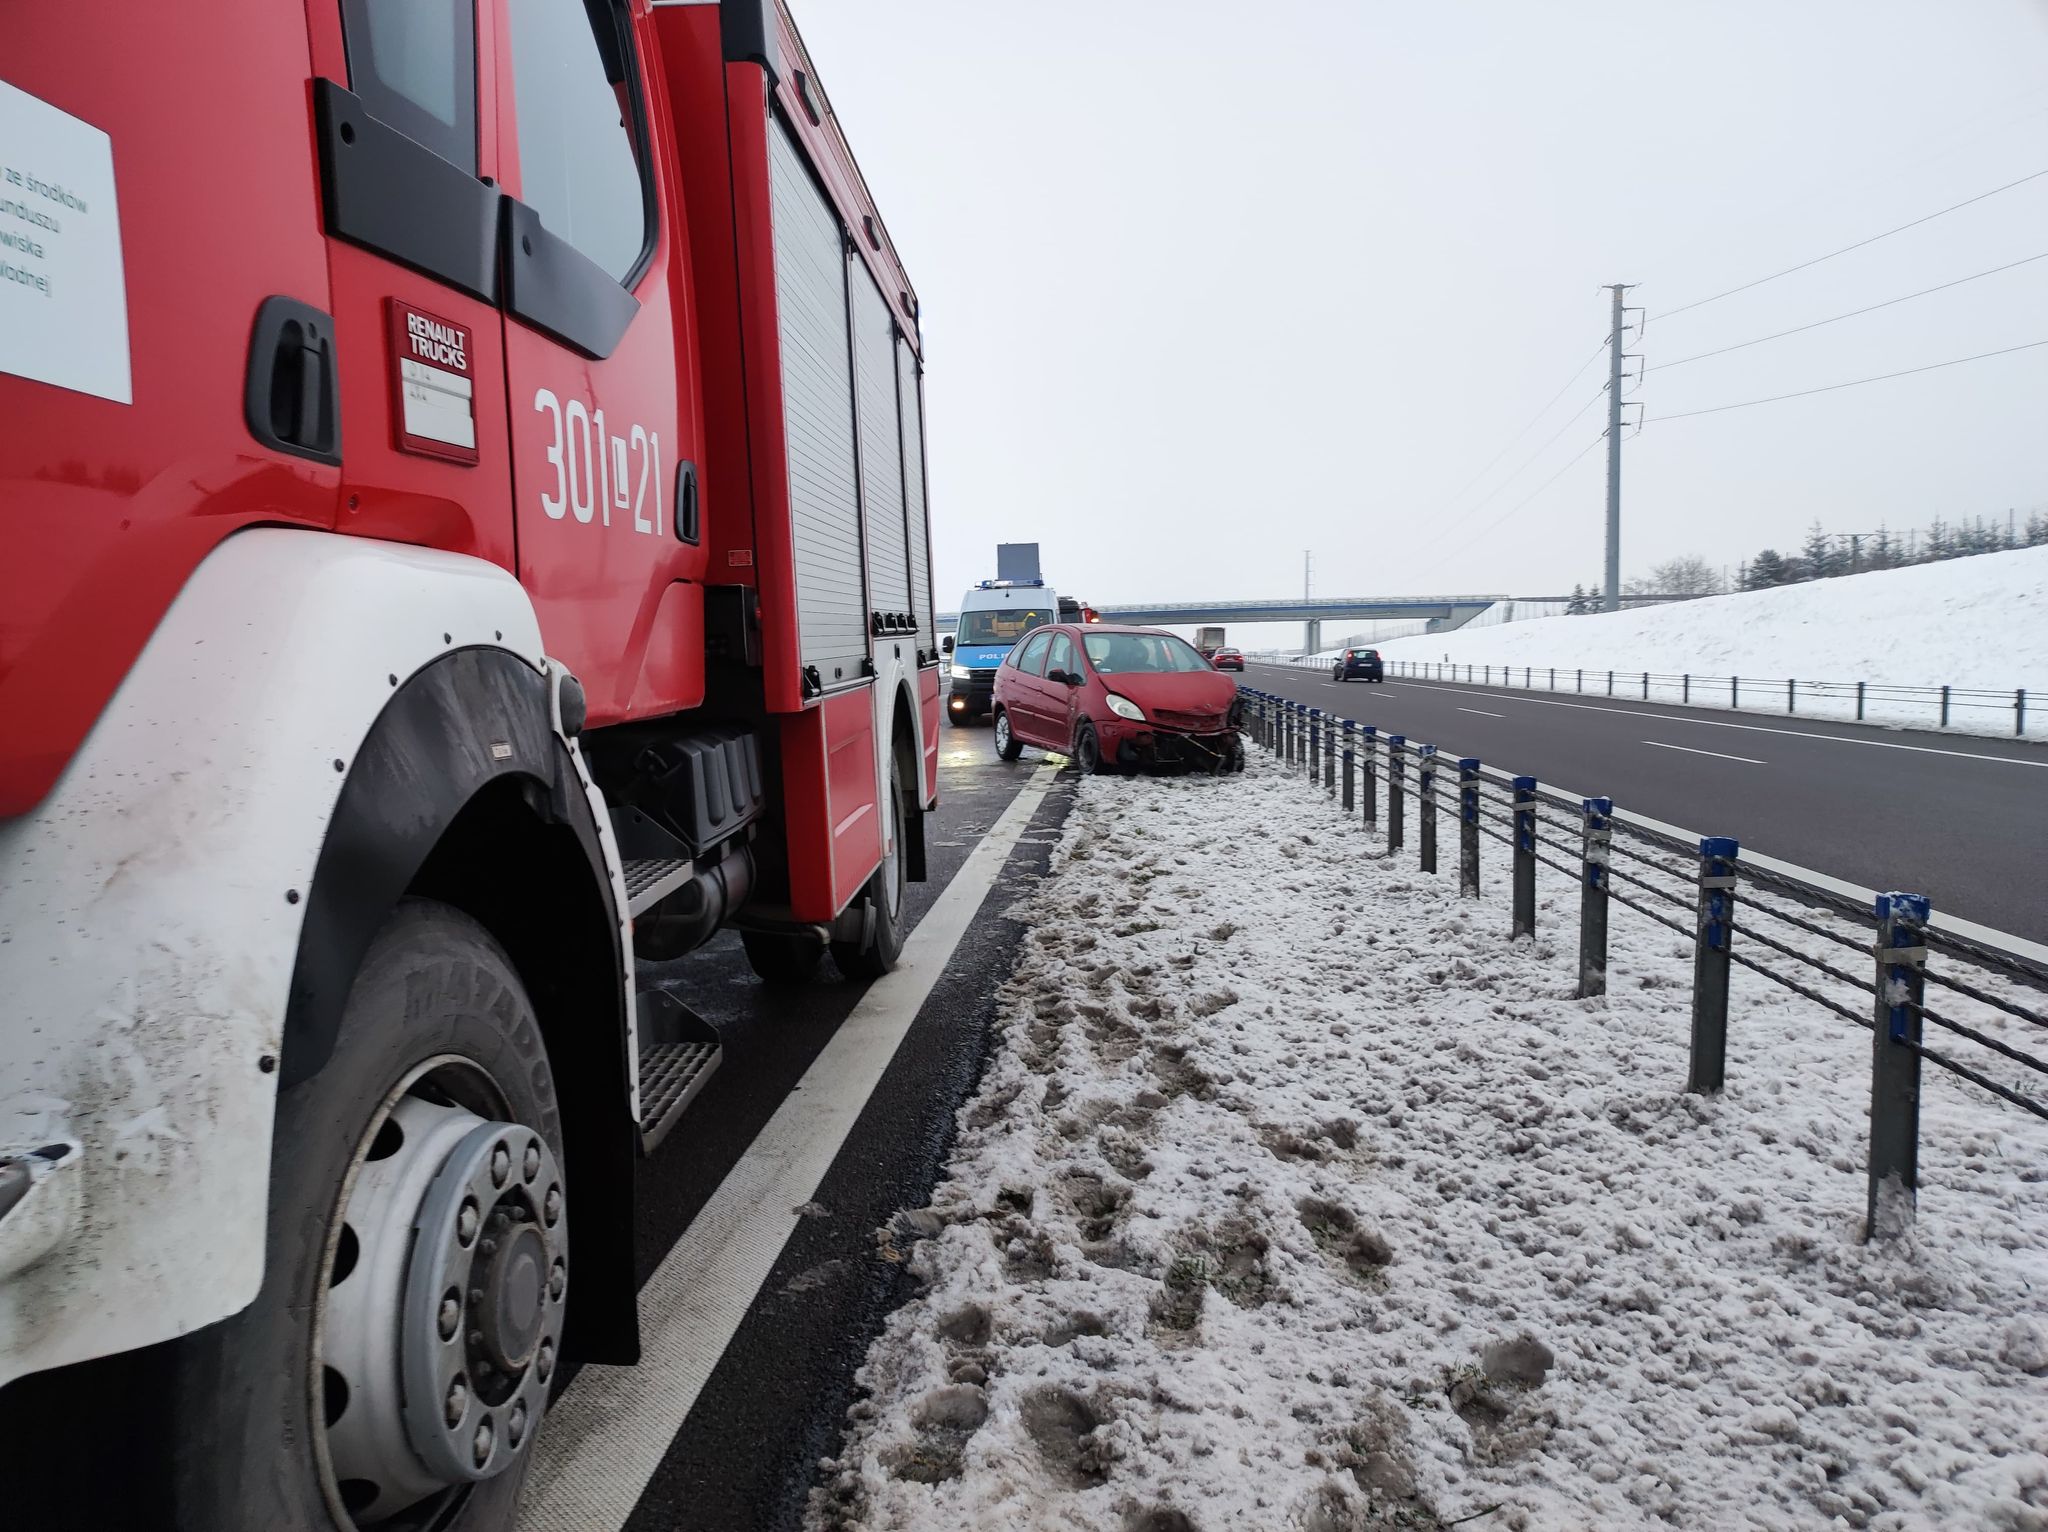 Citroen uderzył w bariery na obwodnicy Lublina. Jeden pas jezdni jest zablokowany (zdjęcia)